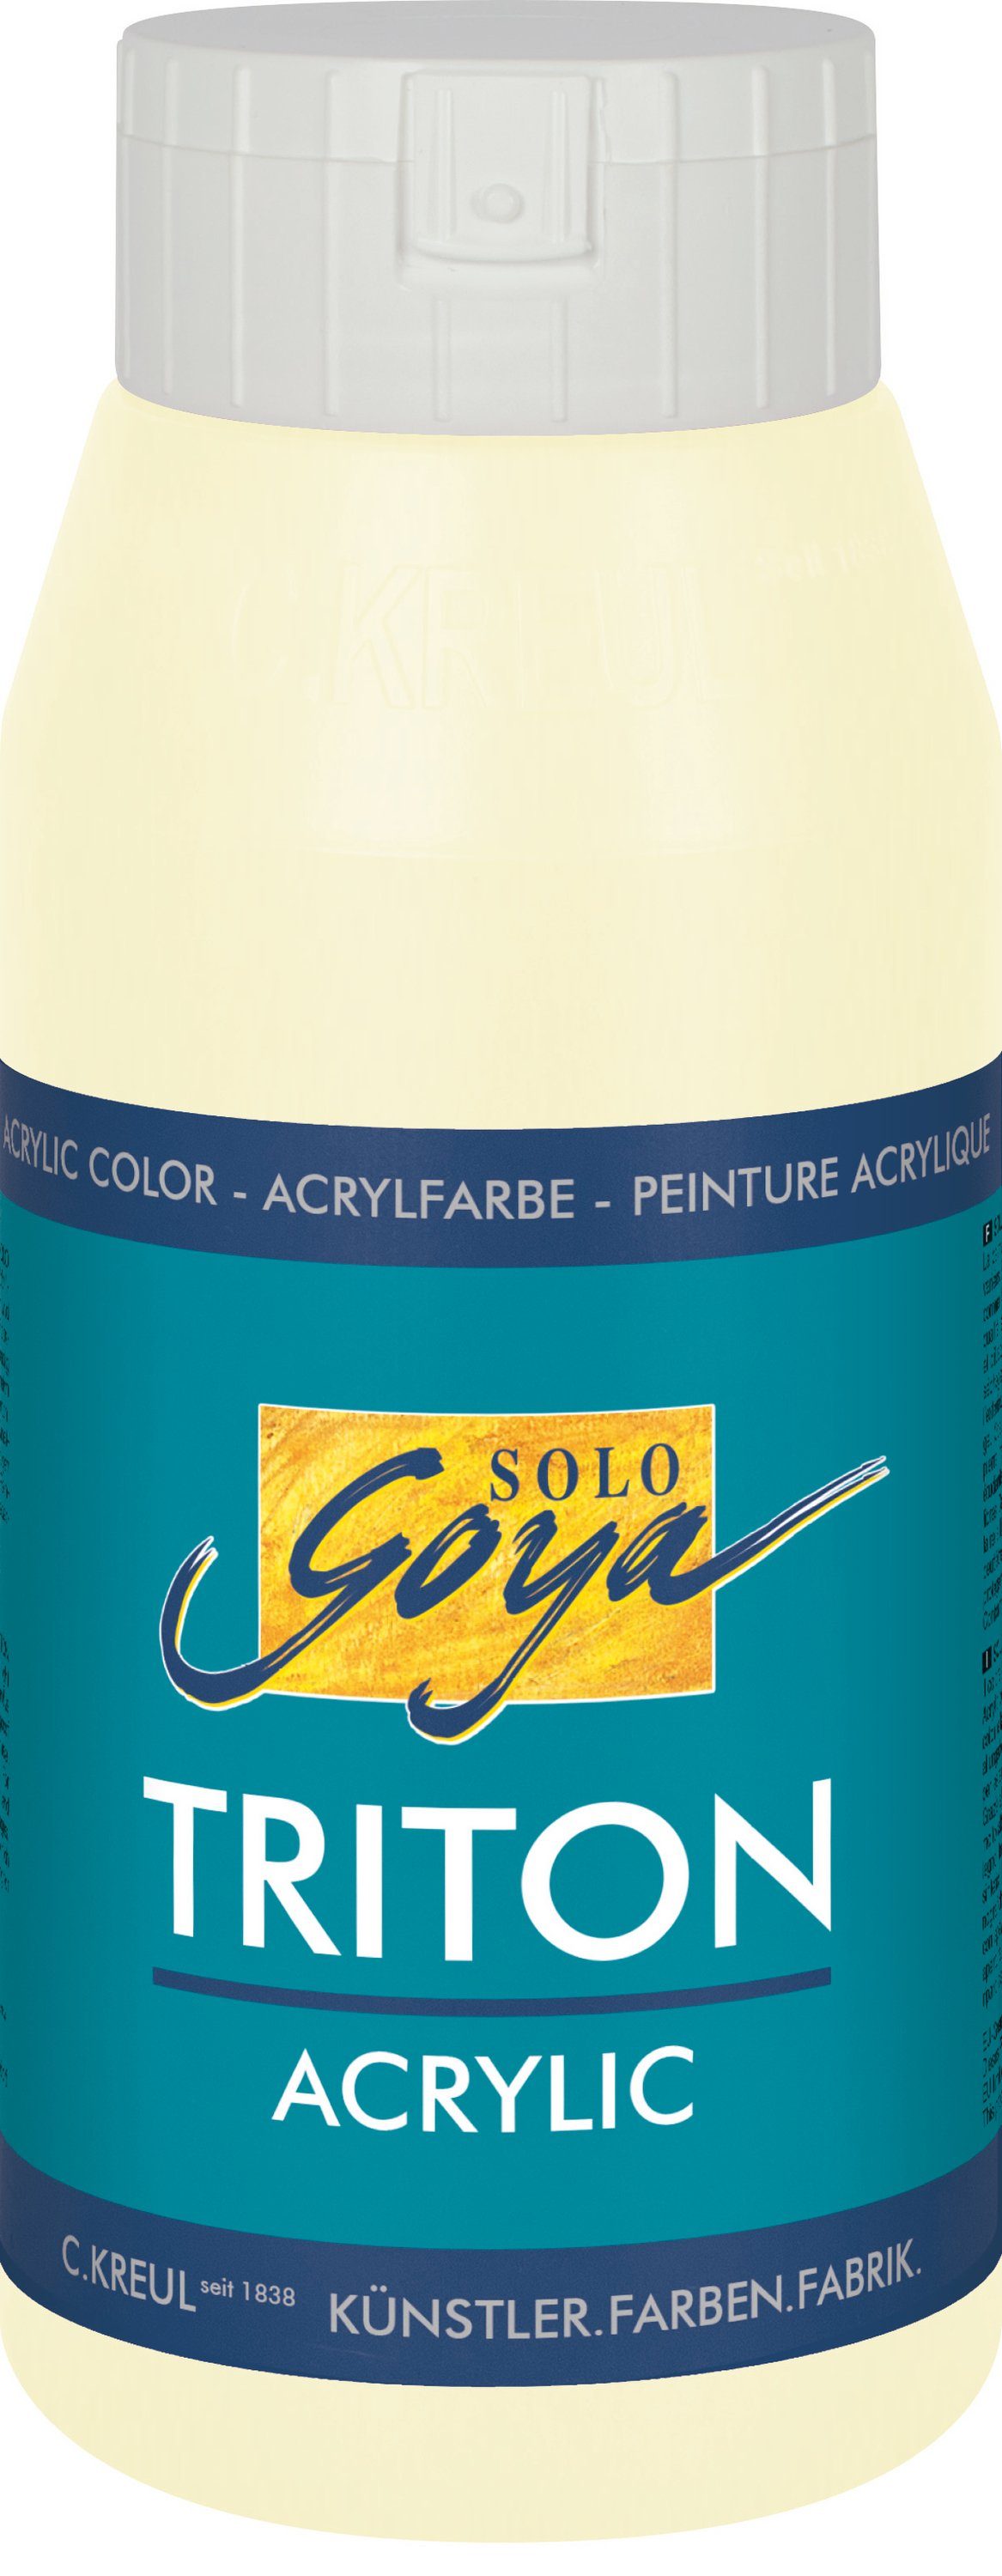 Kreul Acrylfarbe Solo Goya Triton 750 Elfenbein Acrylic, ml